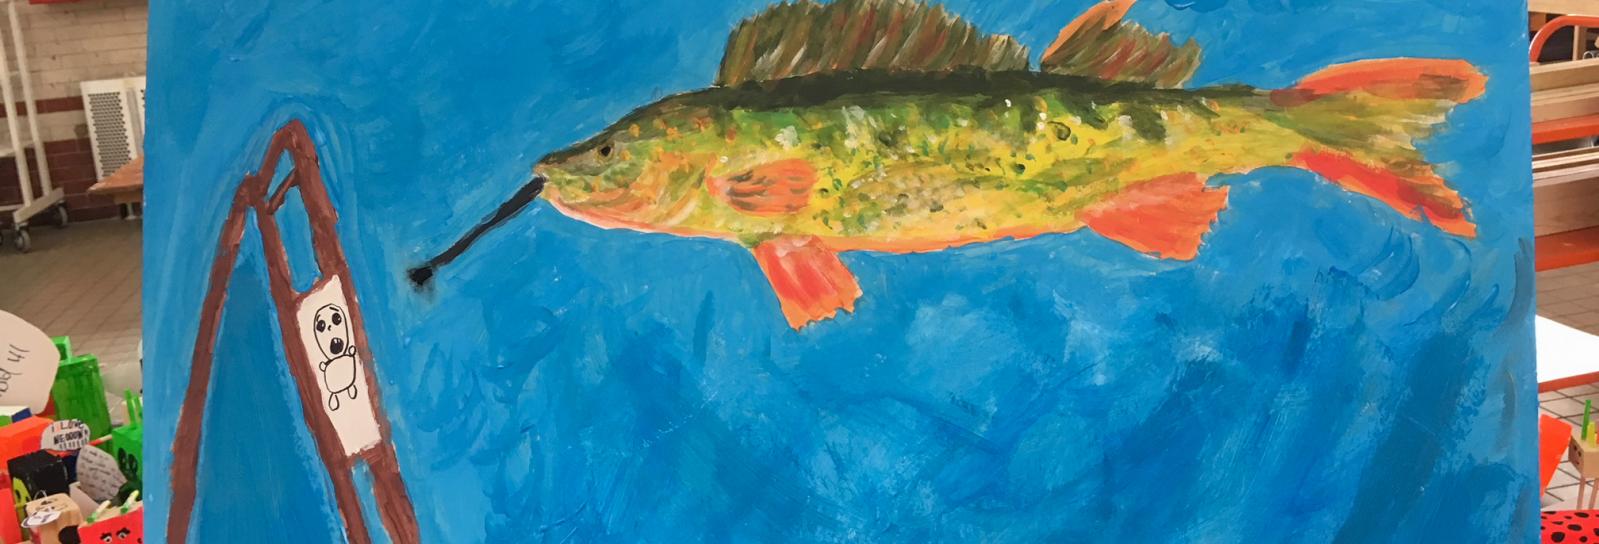 Et maleri af en fisk som maler et menneske på lærred